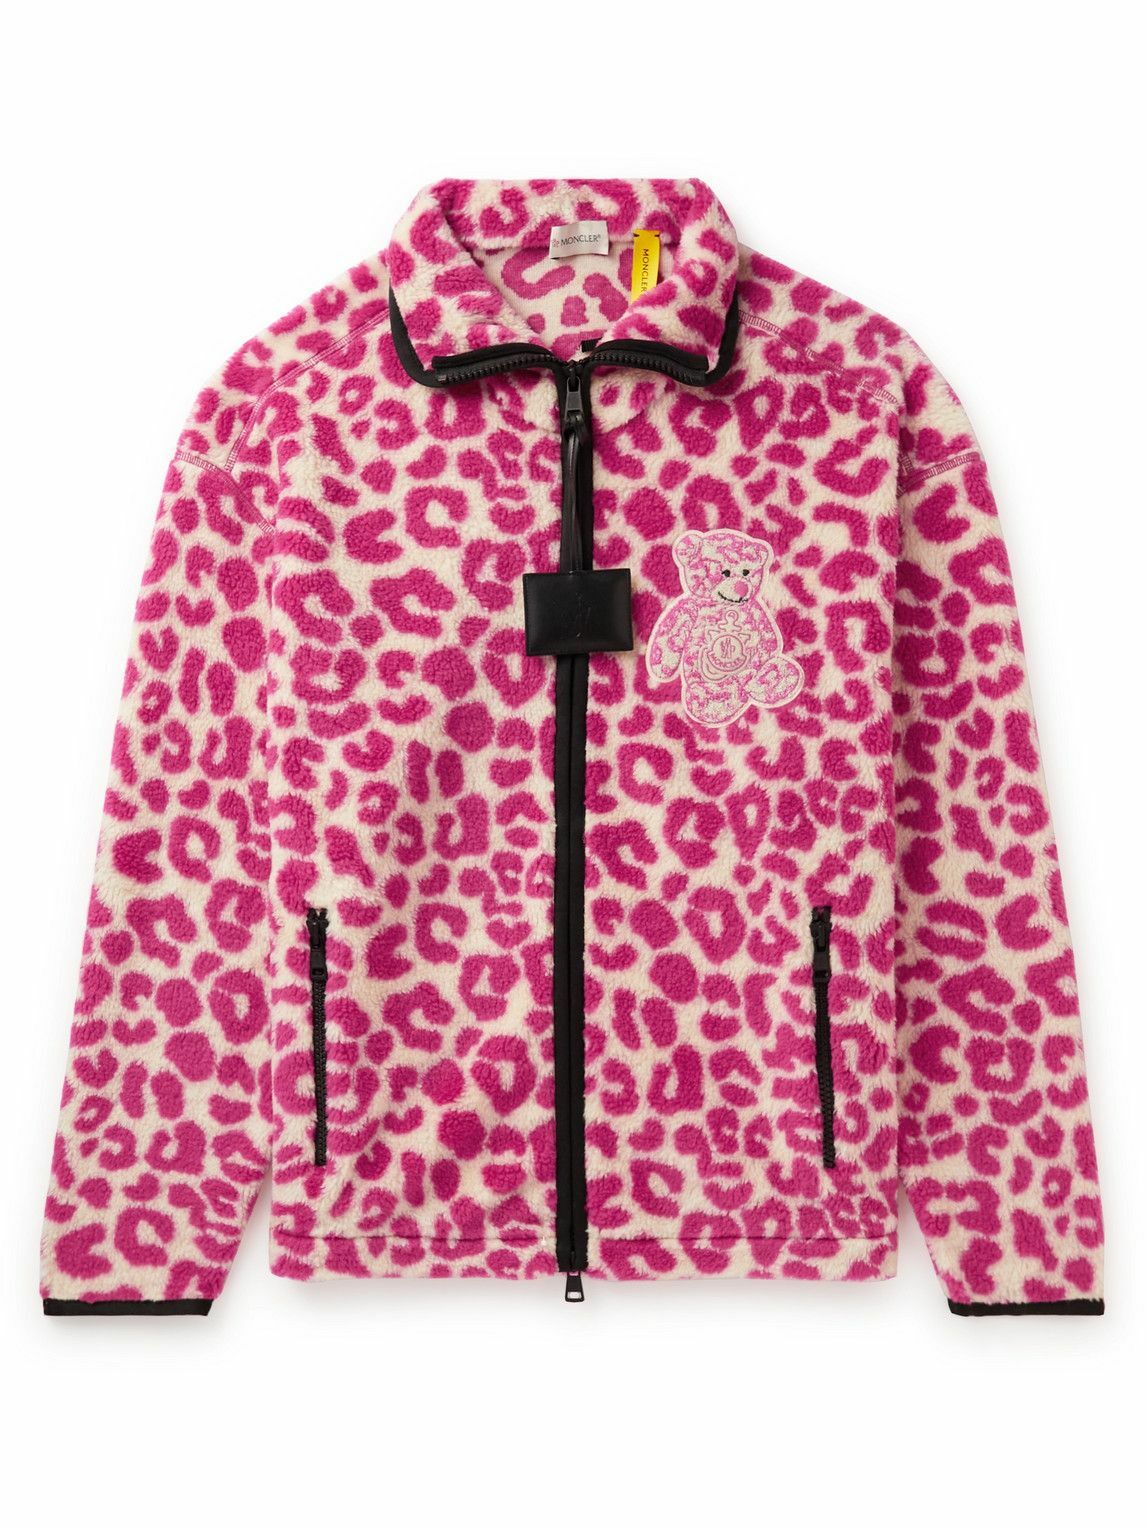 Moncler Genius - 1 Moncler JW Anderson Leopard-Print Fleece Jacket ...